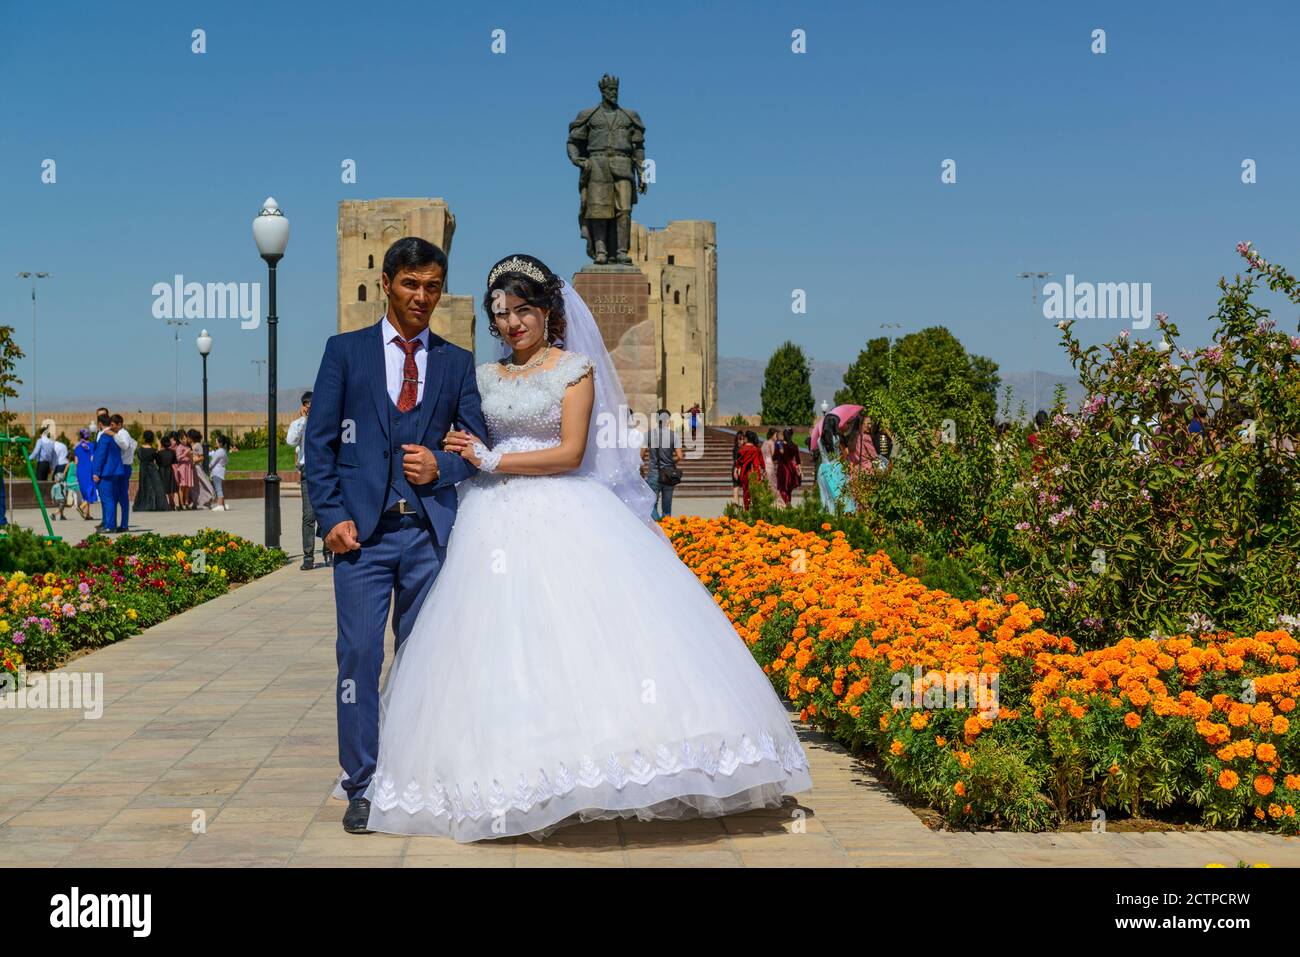 Shahrisabz, le lieu de naissance de Tamerlane est un lieu de prédilection pour les photos de couples de mariage, Ouzbékistan. Banque D'Images